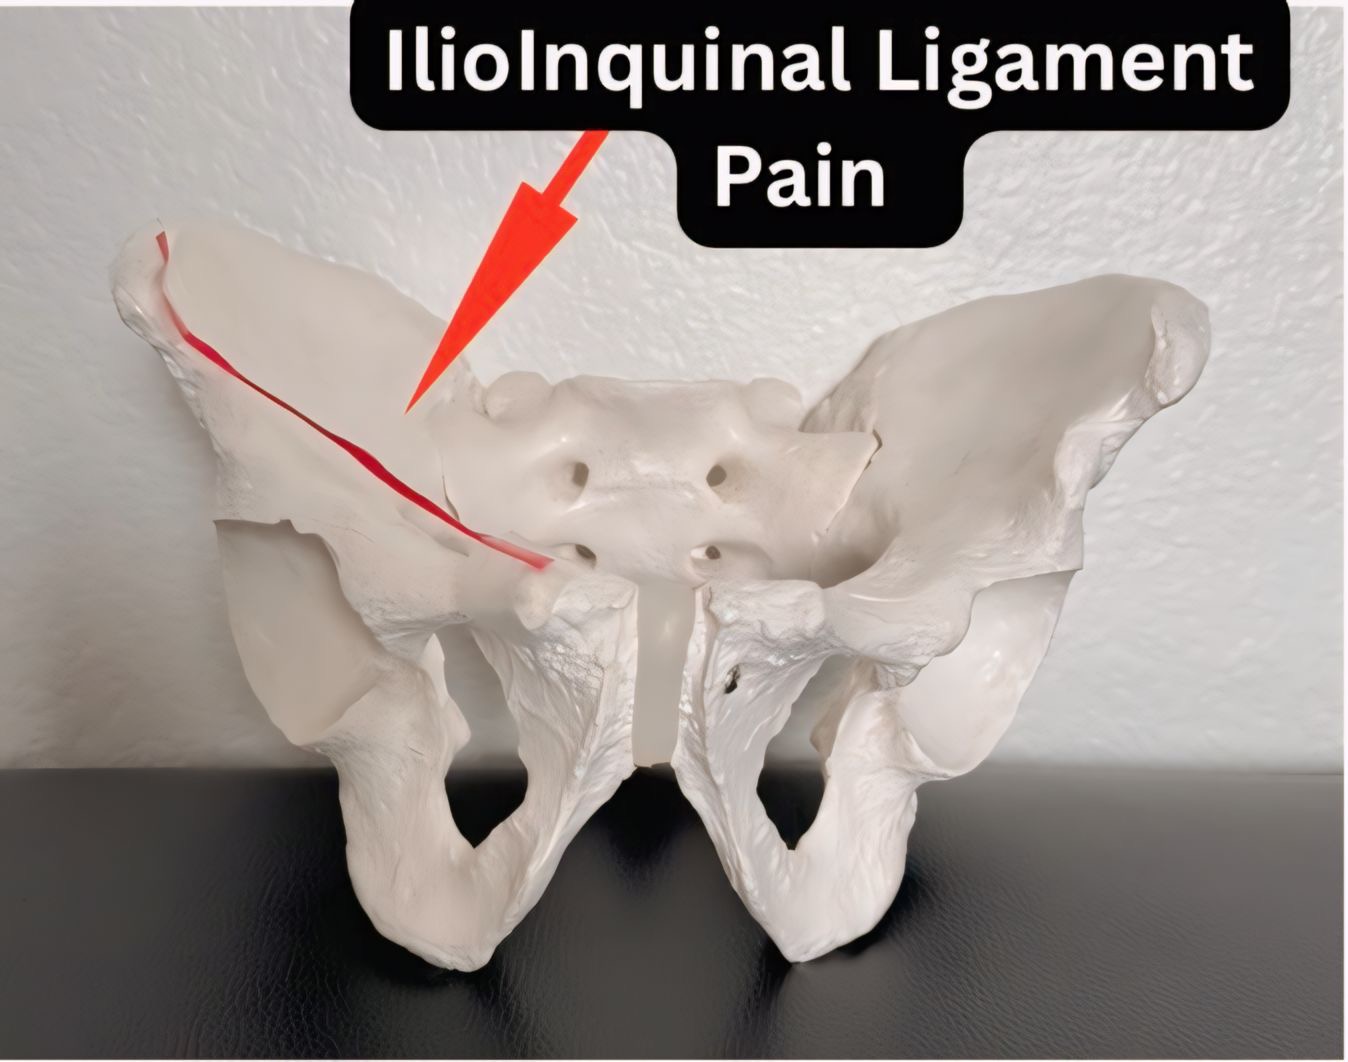 https://drjustindean.com/wp-content/uploads/2024/03/Ilioinquinal-Ligament-Pain.jpg